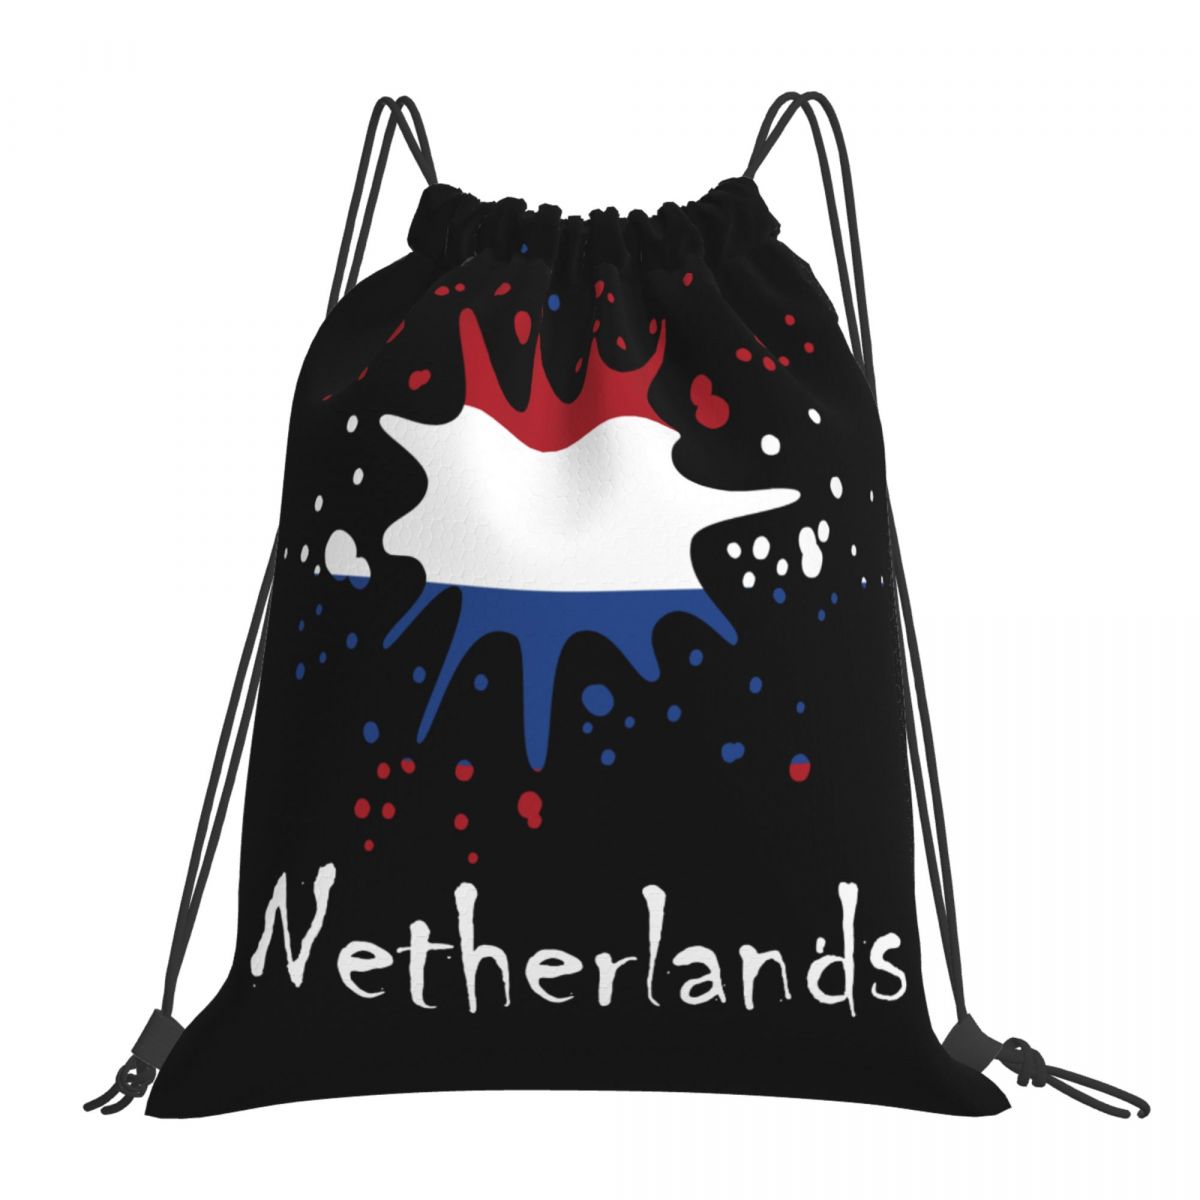 Netherlands Ink Spatter Unisex Drawstring Backpack Bag Travel Sackpack